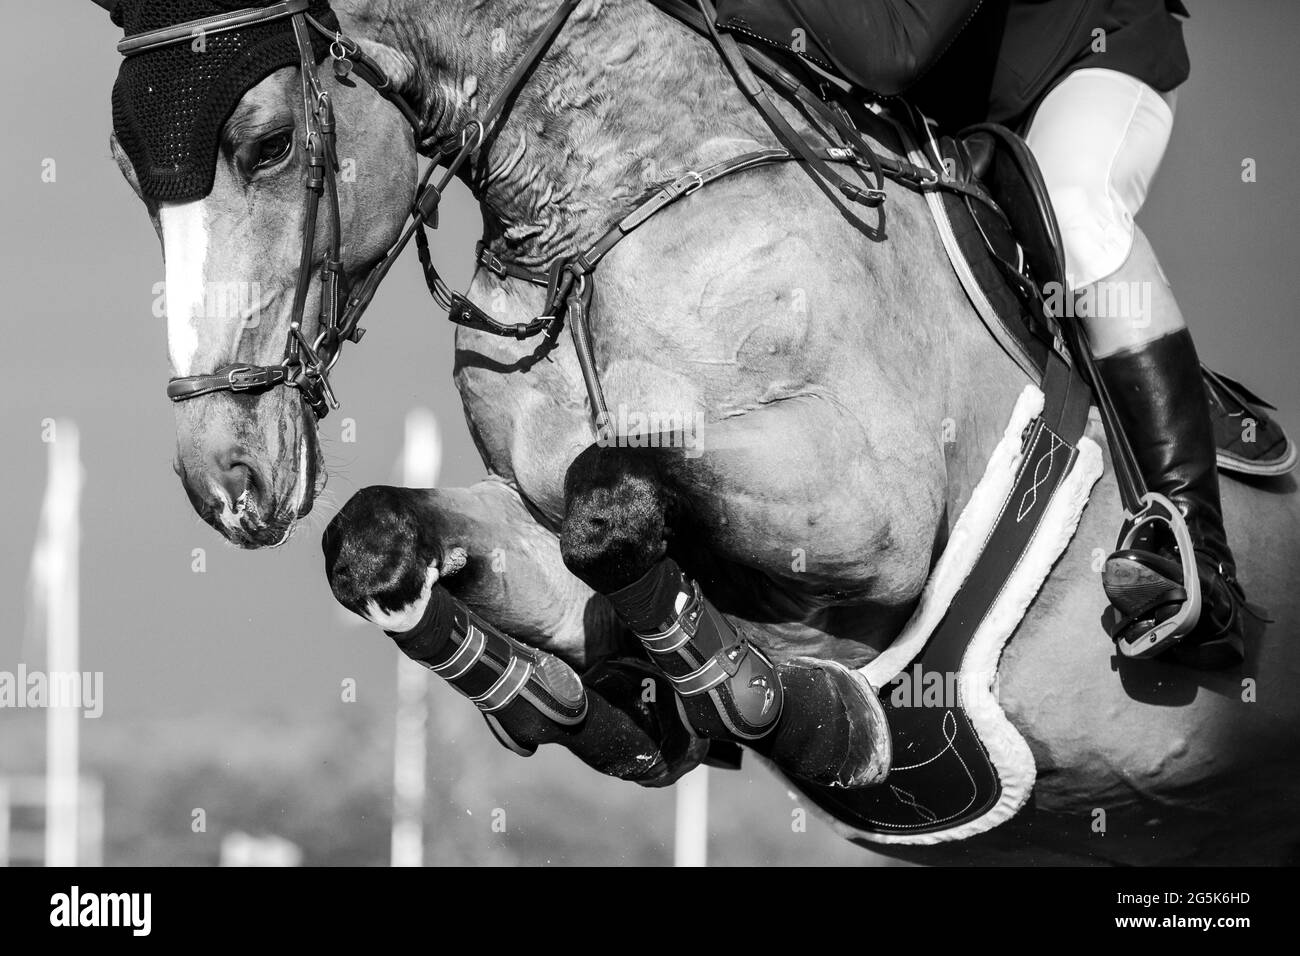 Blanco y negro Deportes ecuestres foto-tema: Salto de caballo, Show Jumping, Equitación. Foto de stock